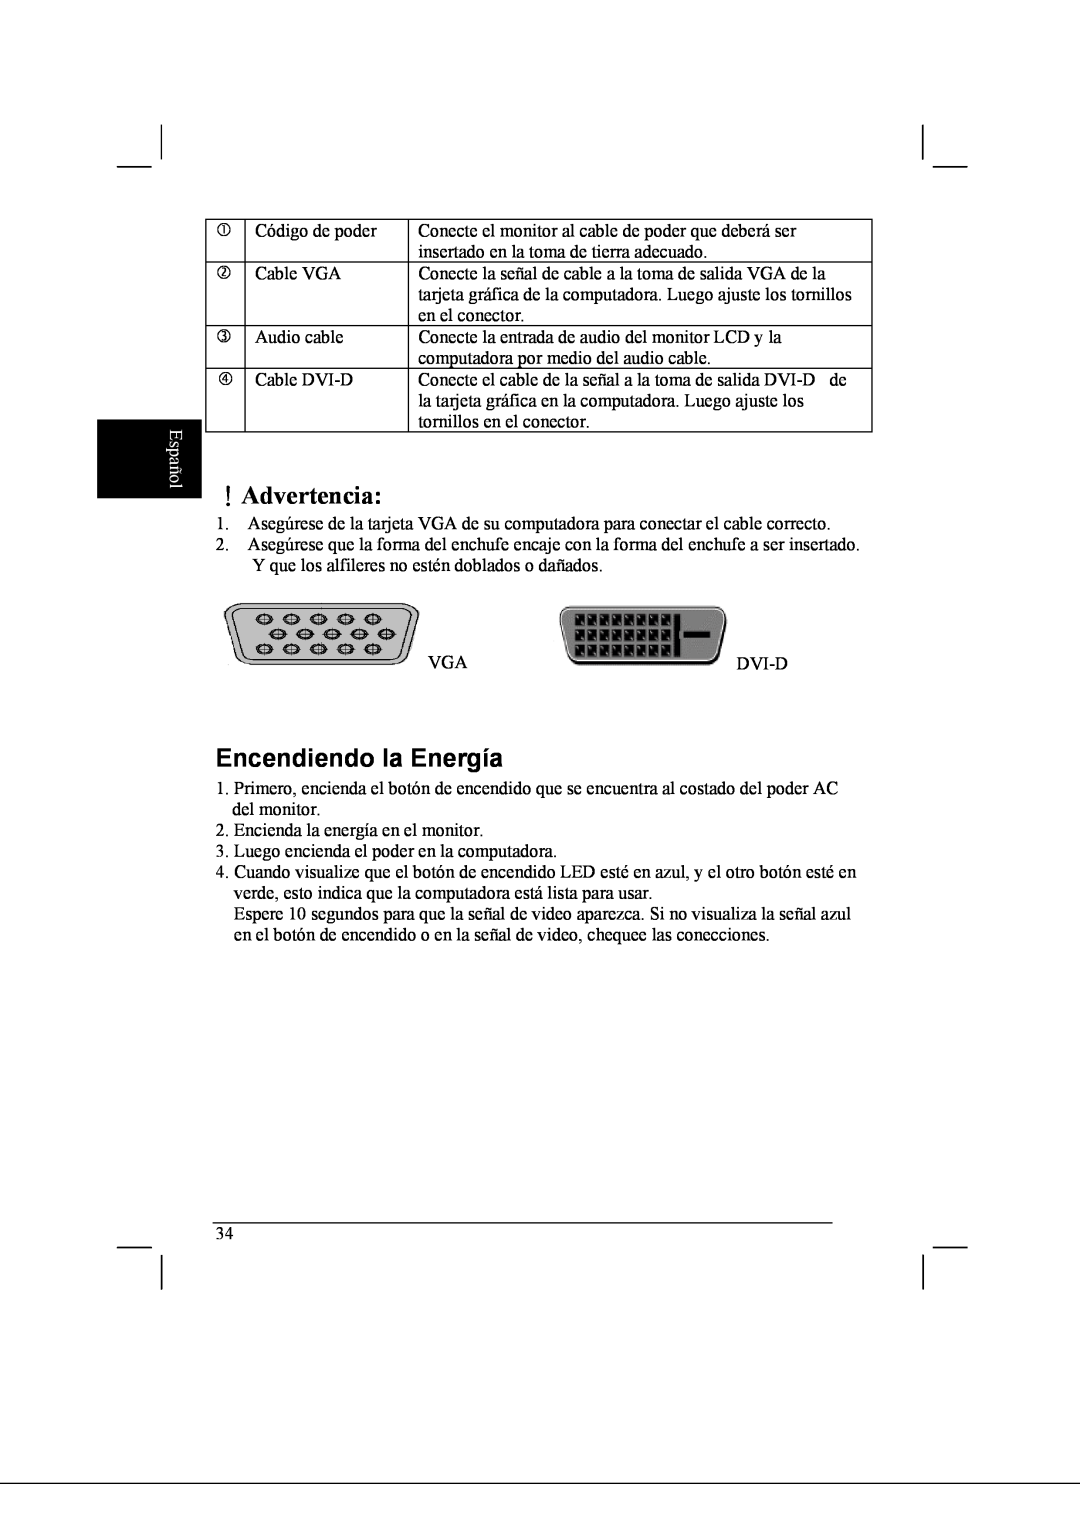 Acer AL2021 manual ！Advertencia, Encendiendo la Energía, Español 